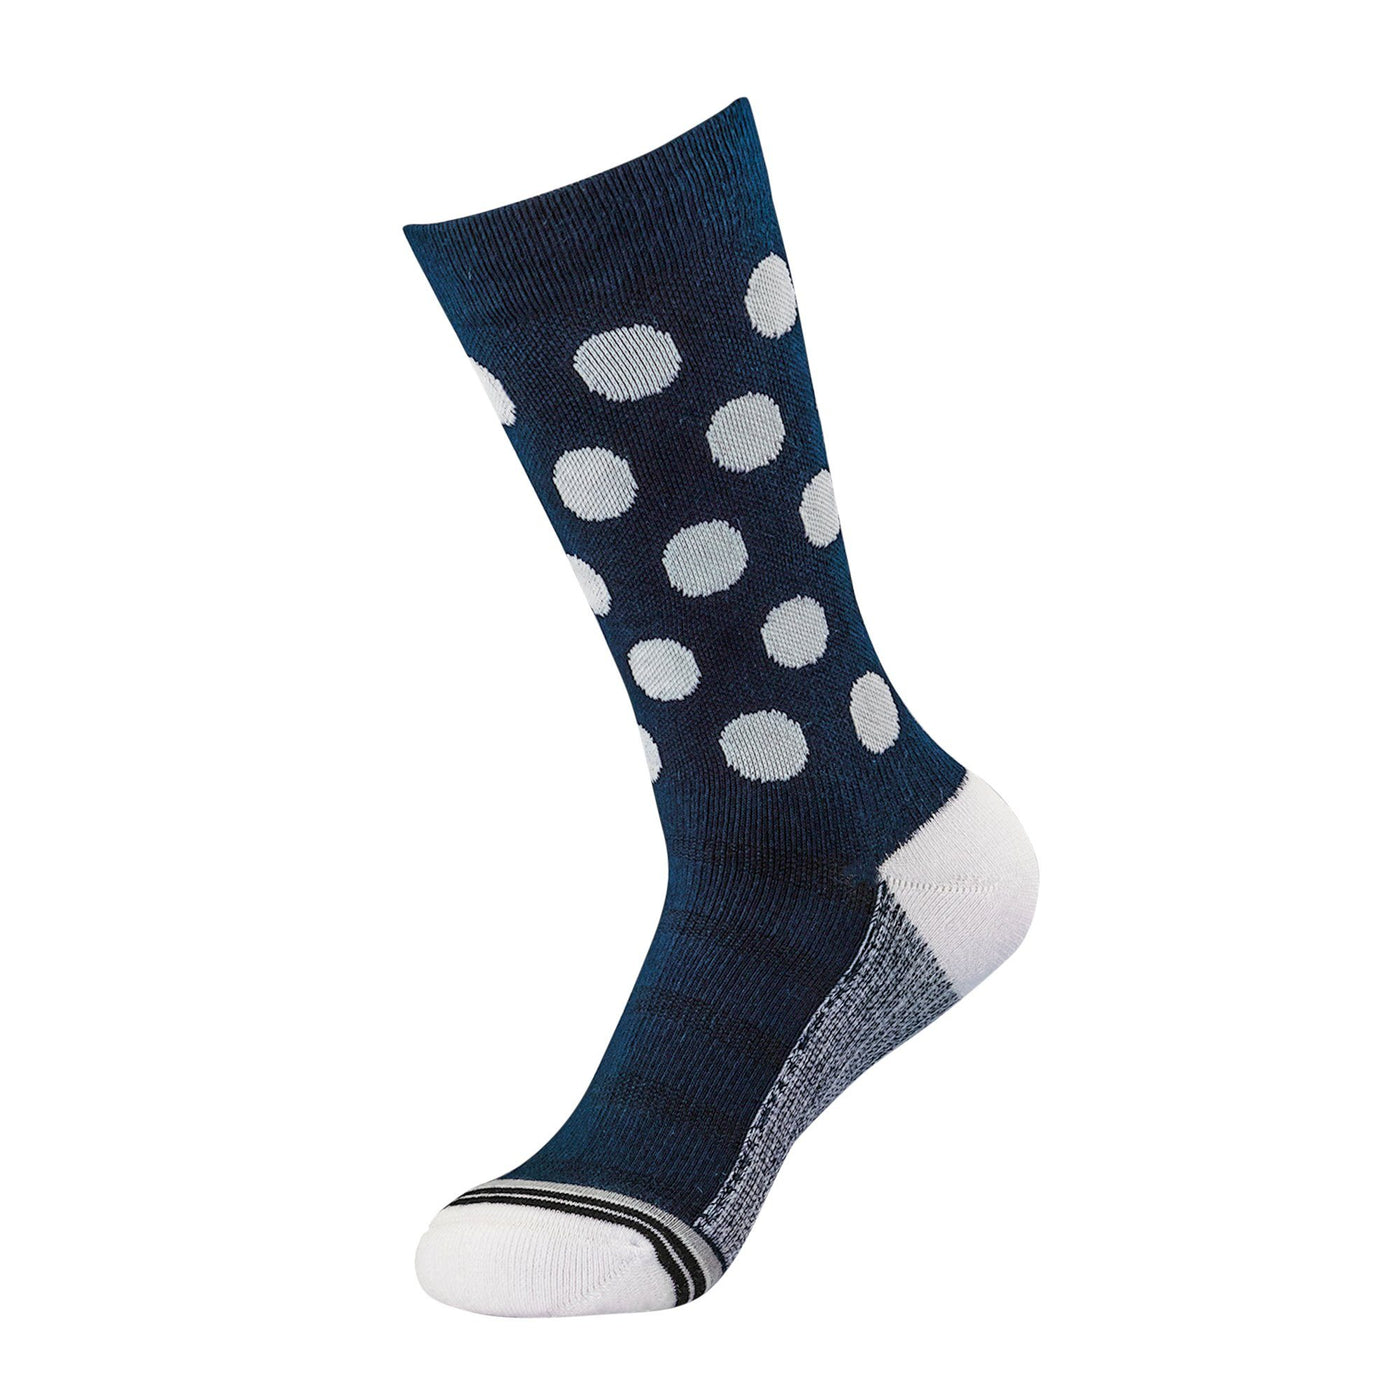 Blues Pack dress socks ArchTek